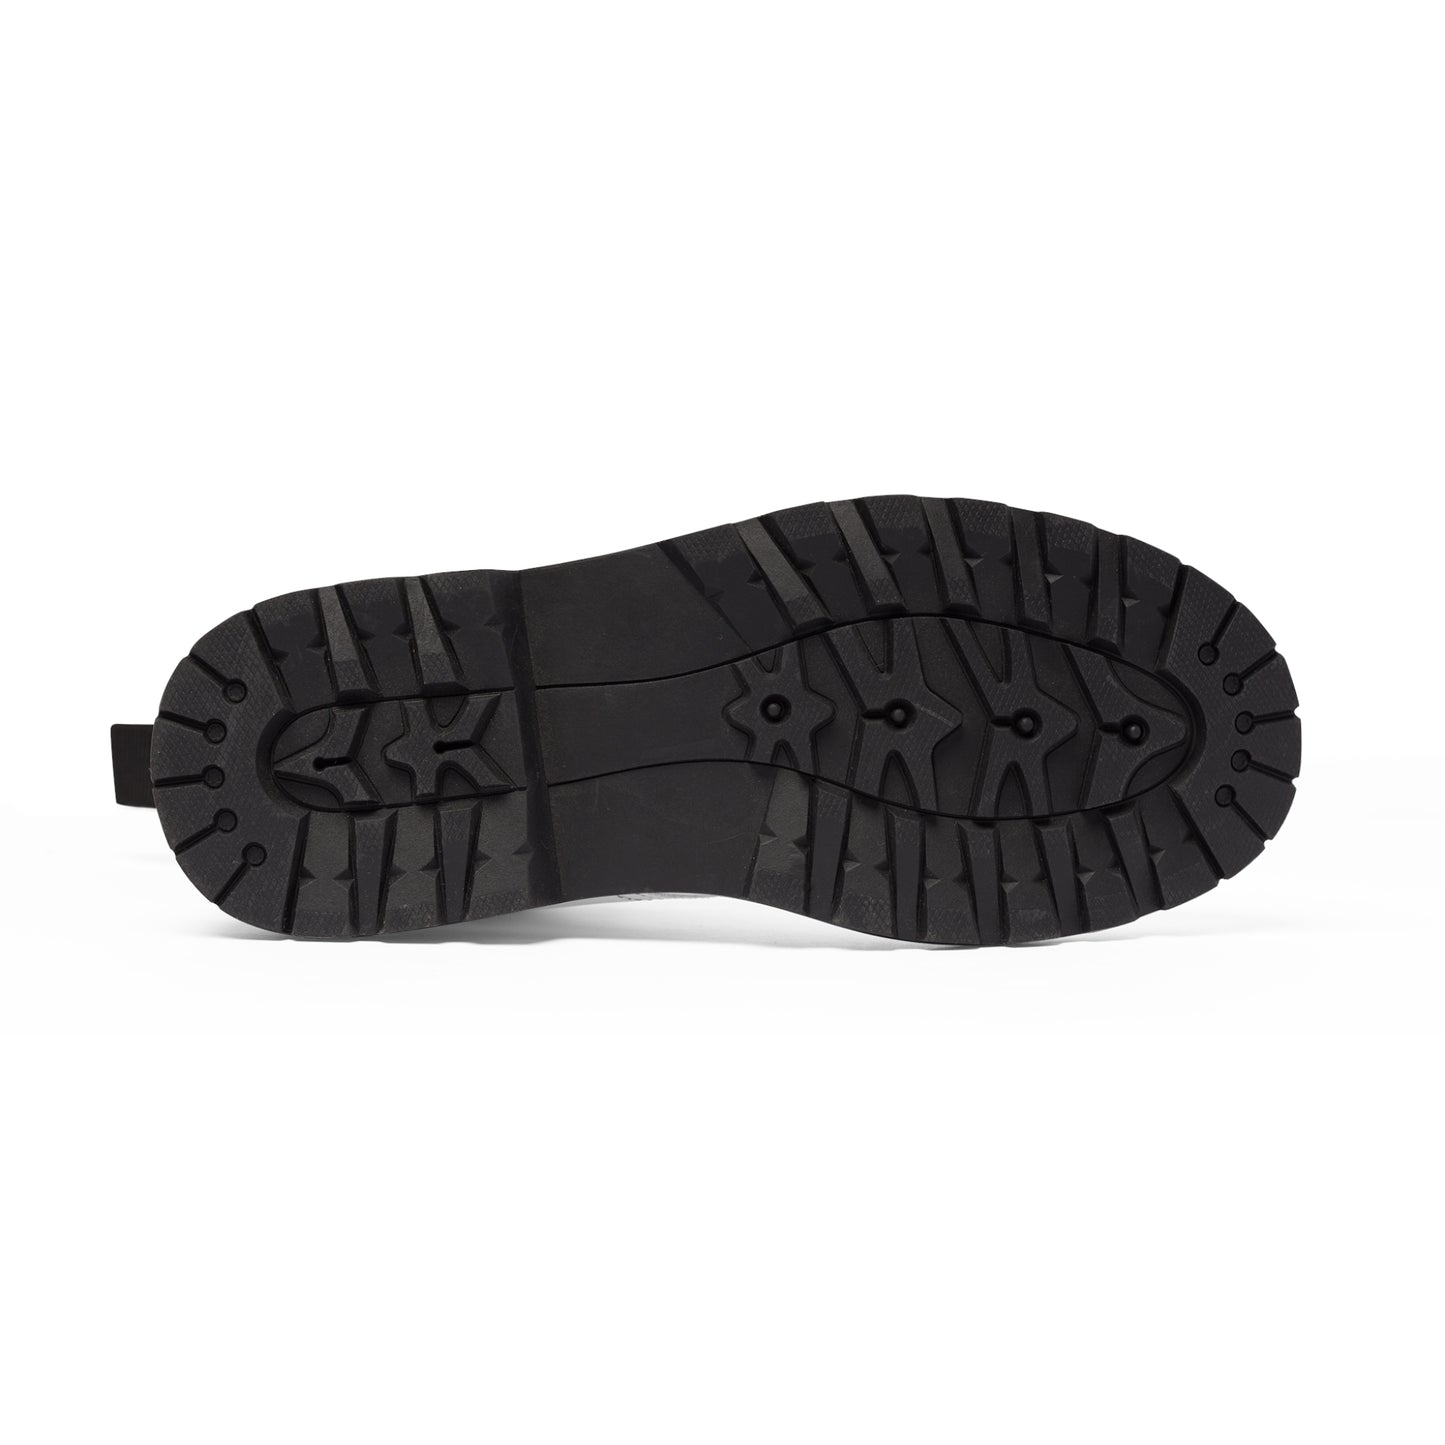 Men's Canvas Boots - Rotten Orange US 10.5 Black sole